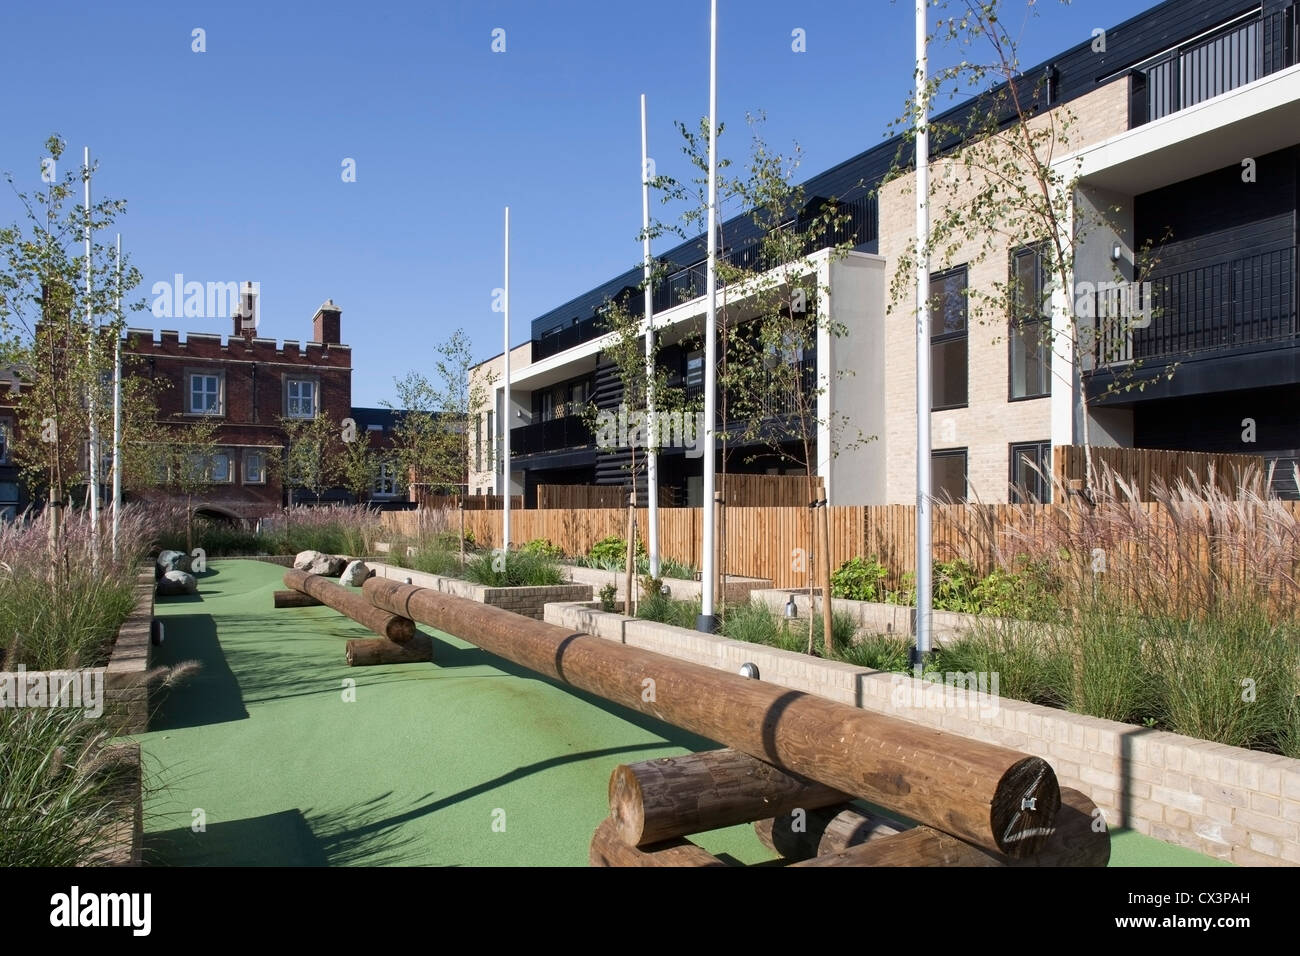 Real Academia Militar, Londres, Reino Unido. Arquitecto: John McAslan & Partners, 2012. Vista de nuevos apartamentos en la academia. Foto de stock